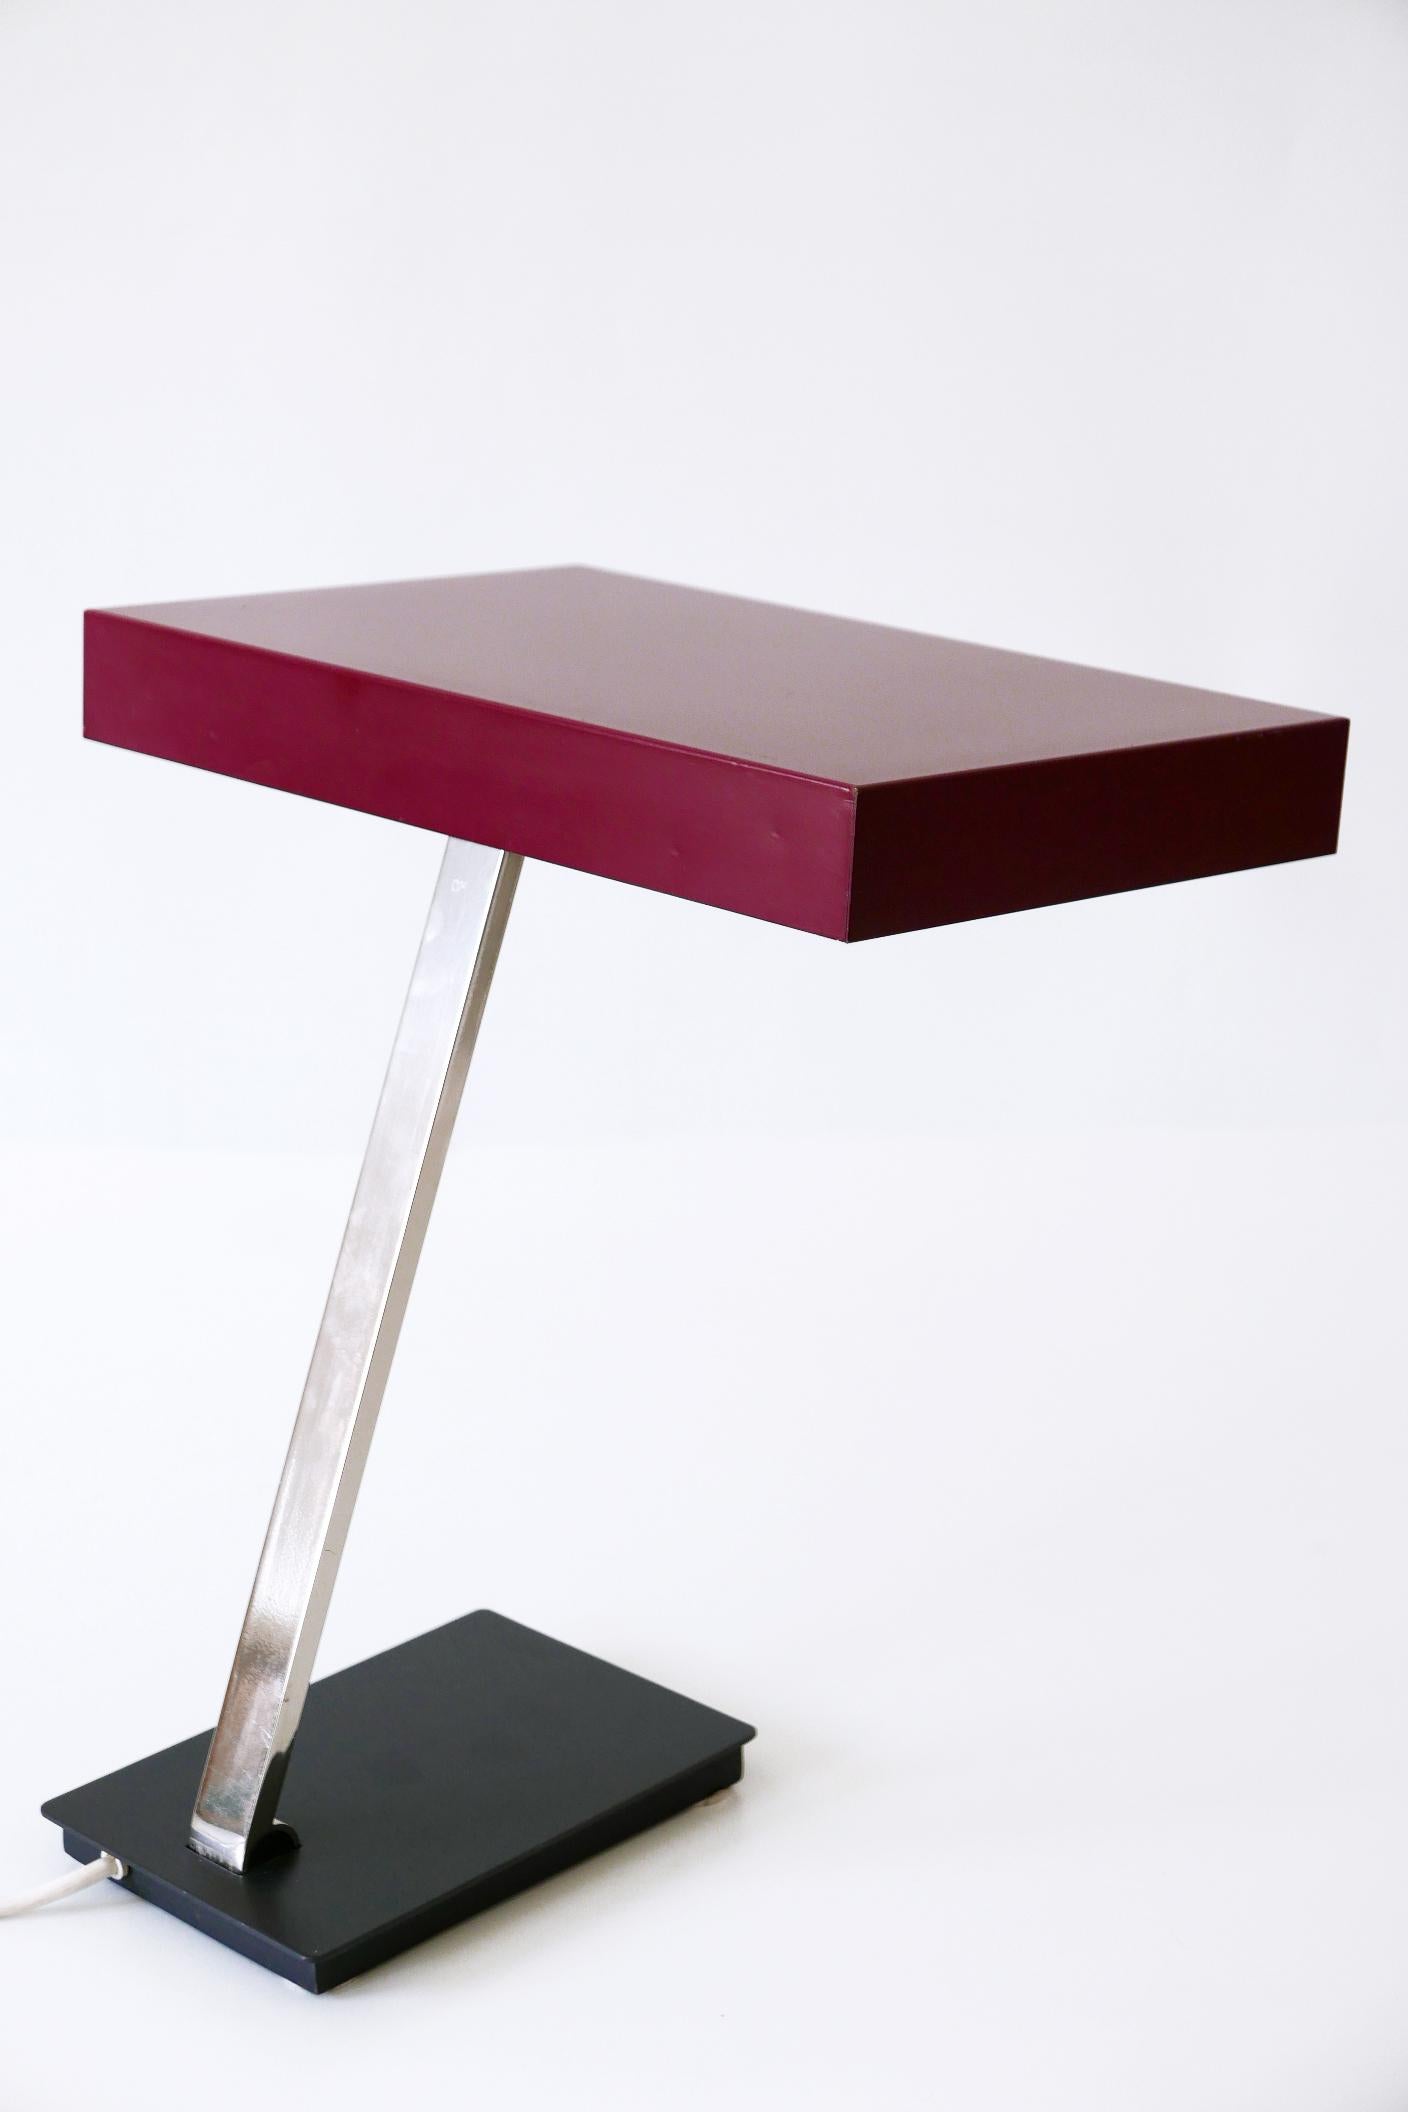 Luxury Mid-Century Modern President Table Lamp by Kaiser Leuchten 1960s Germany For Sale 9